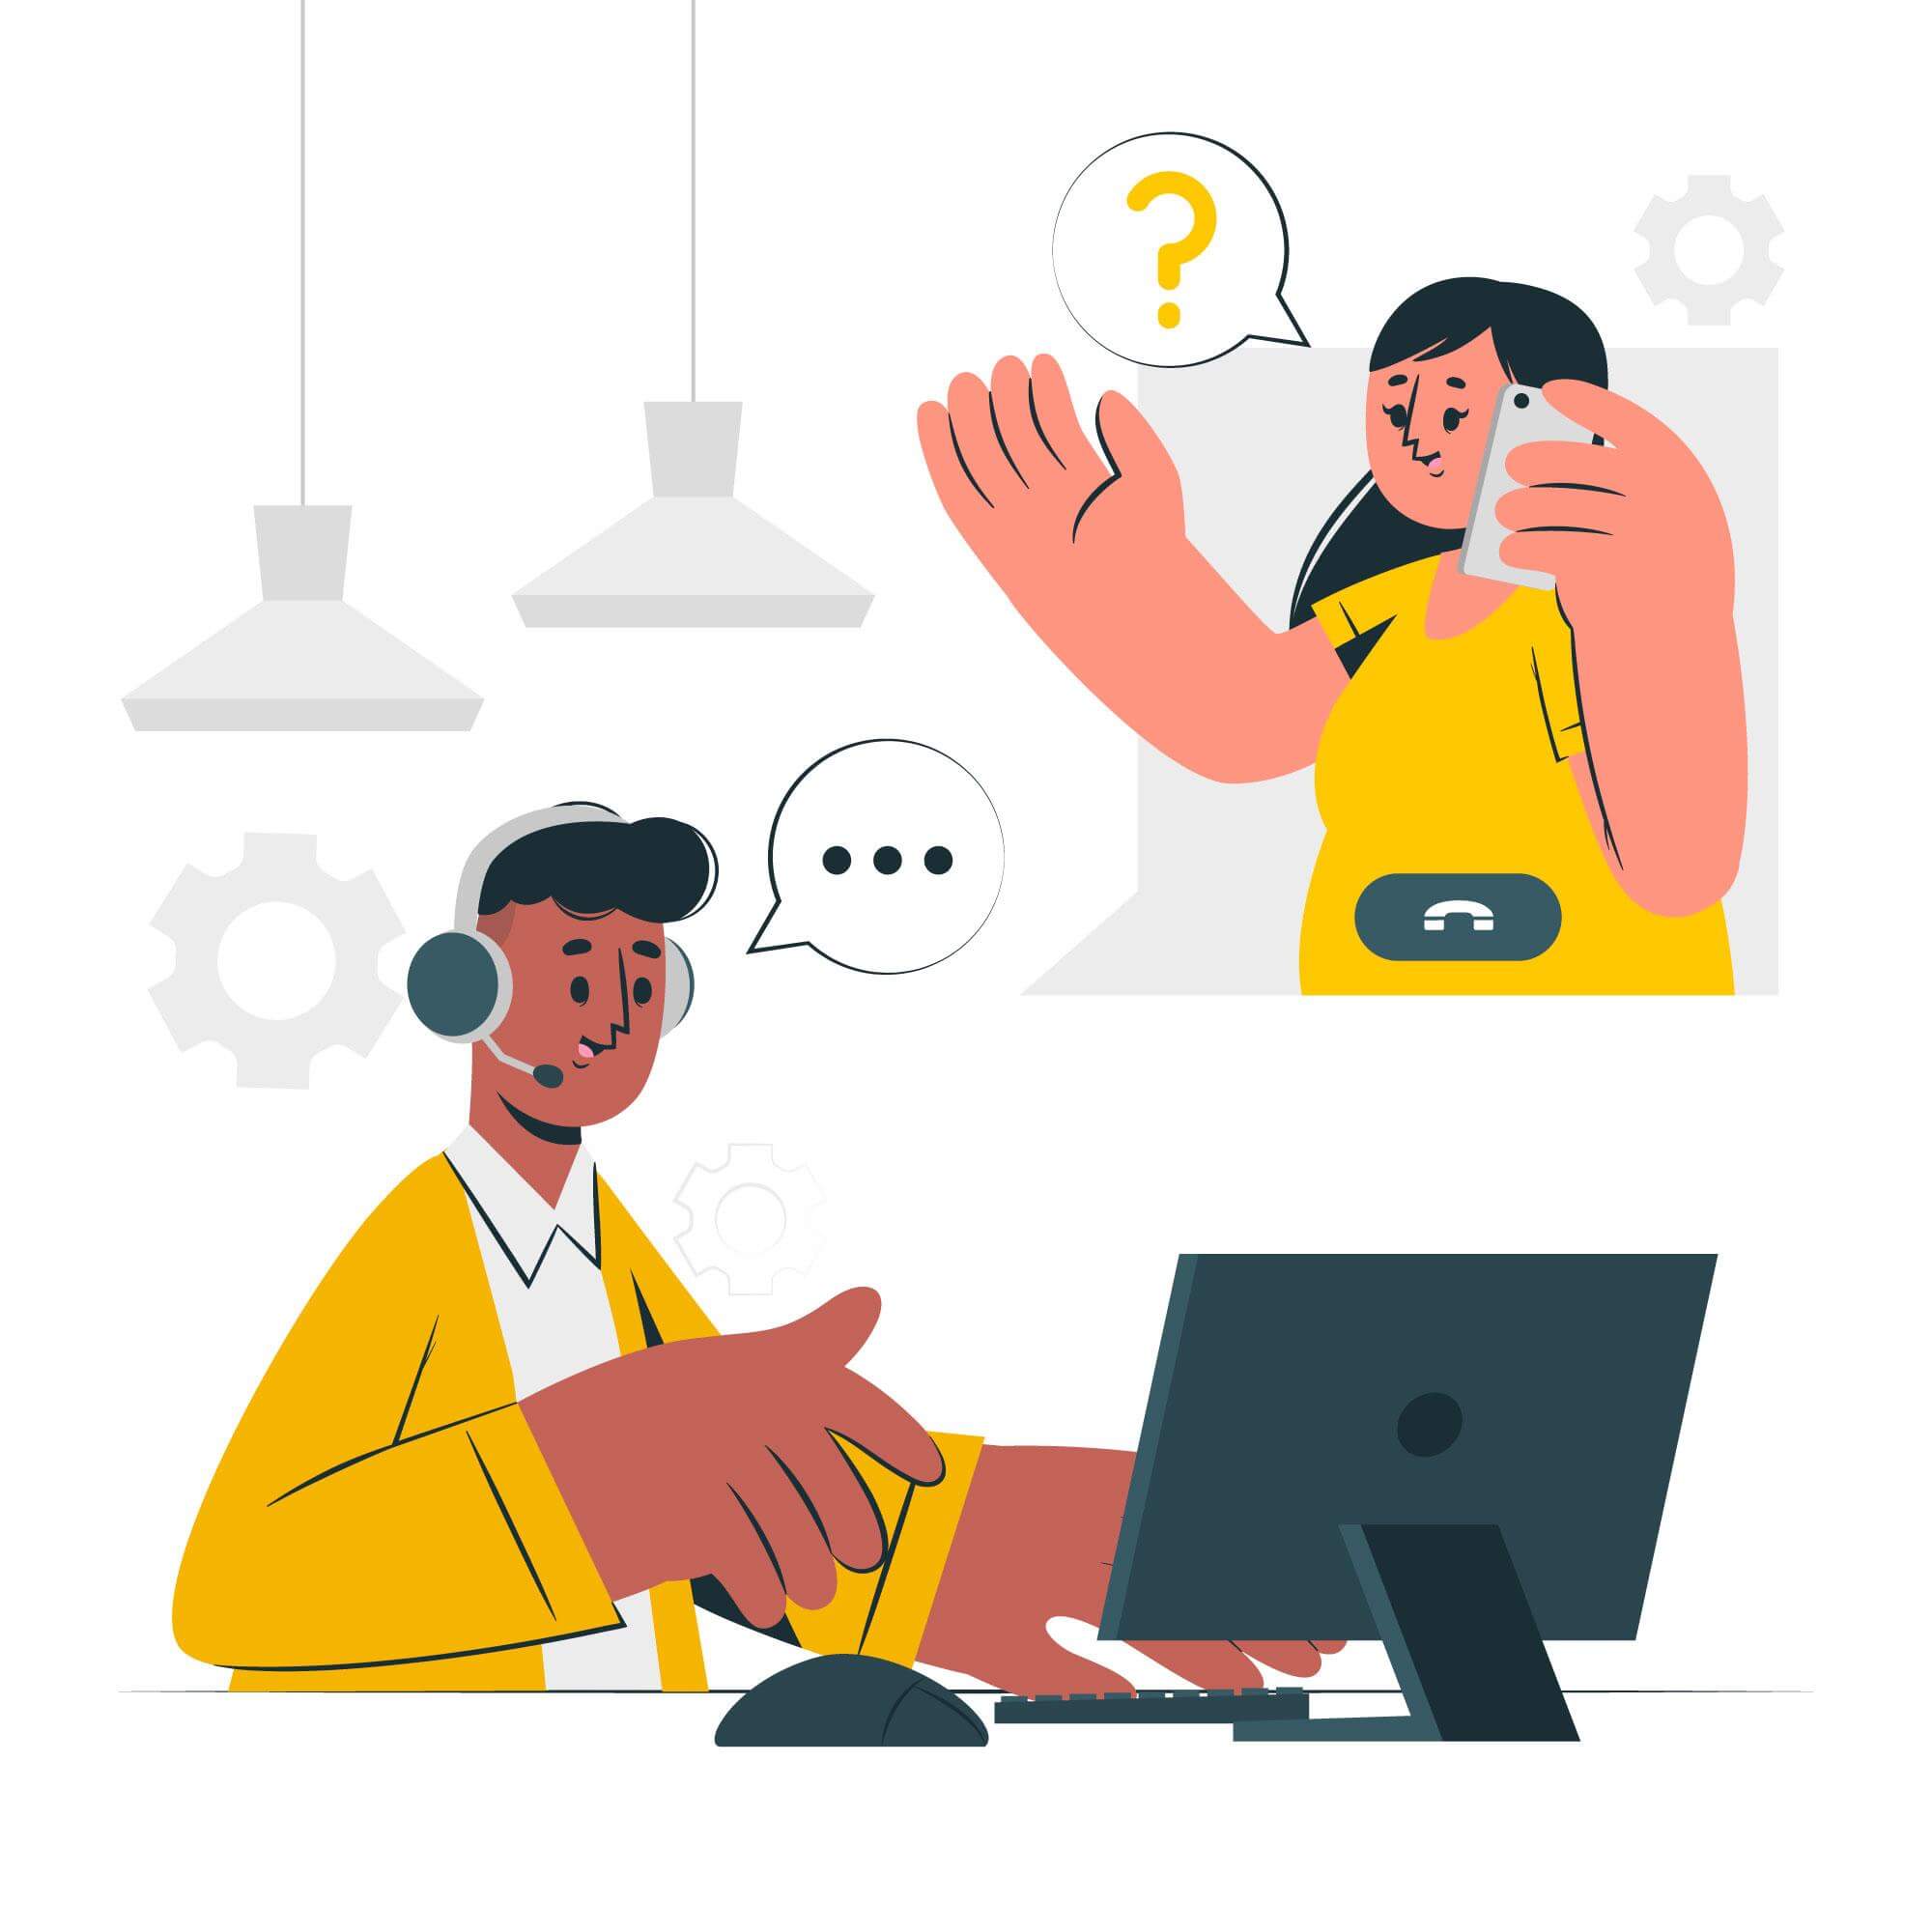 customer support illustration